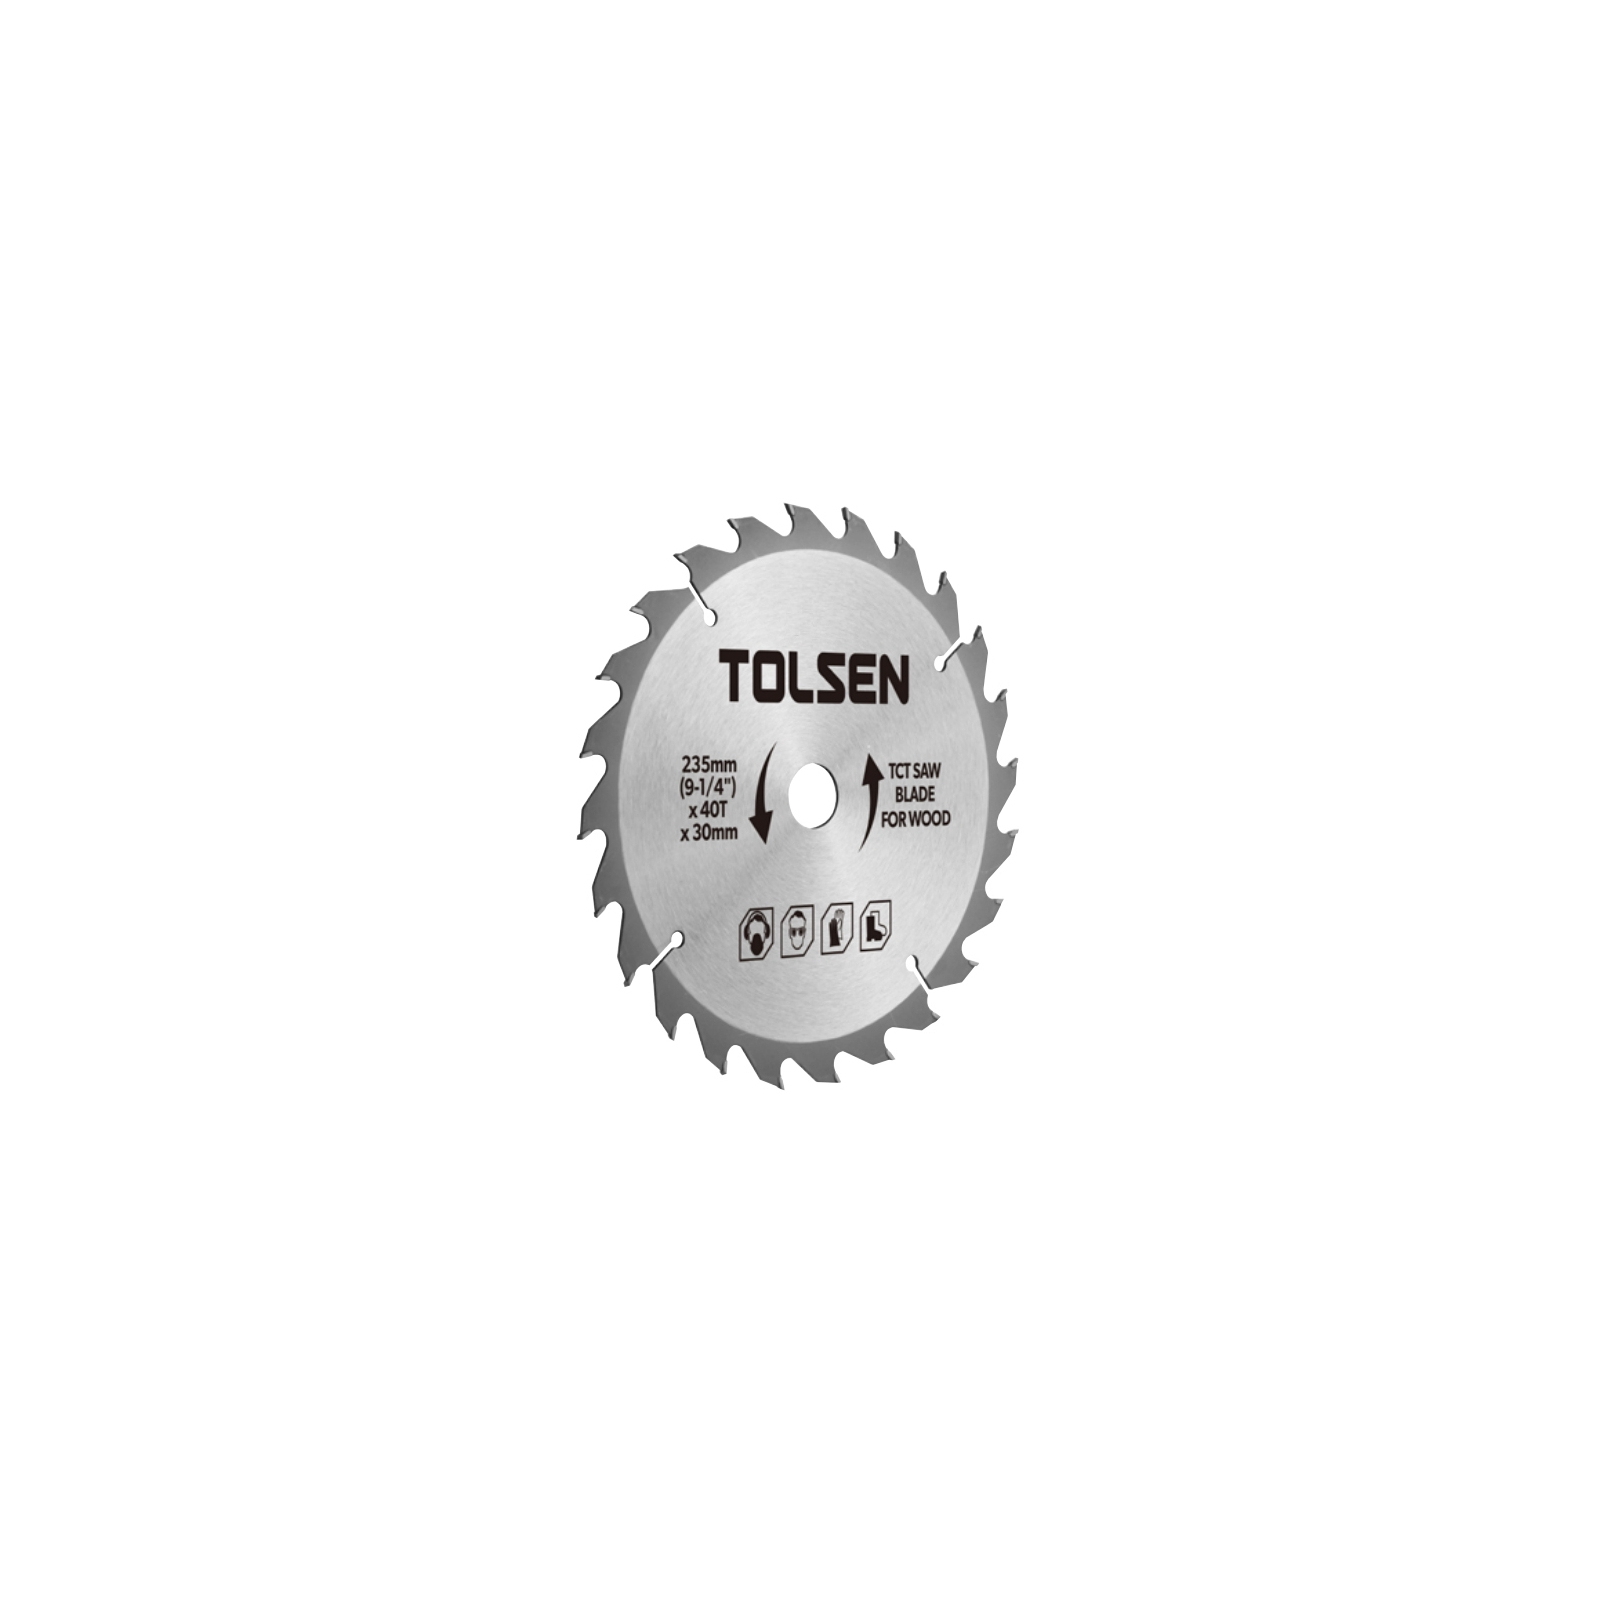 Диск пильный Tolsen пильный с ТВС напайками по дереву 210х48Т*30мм (76441)